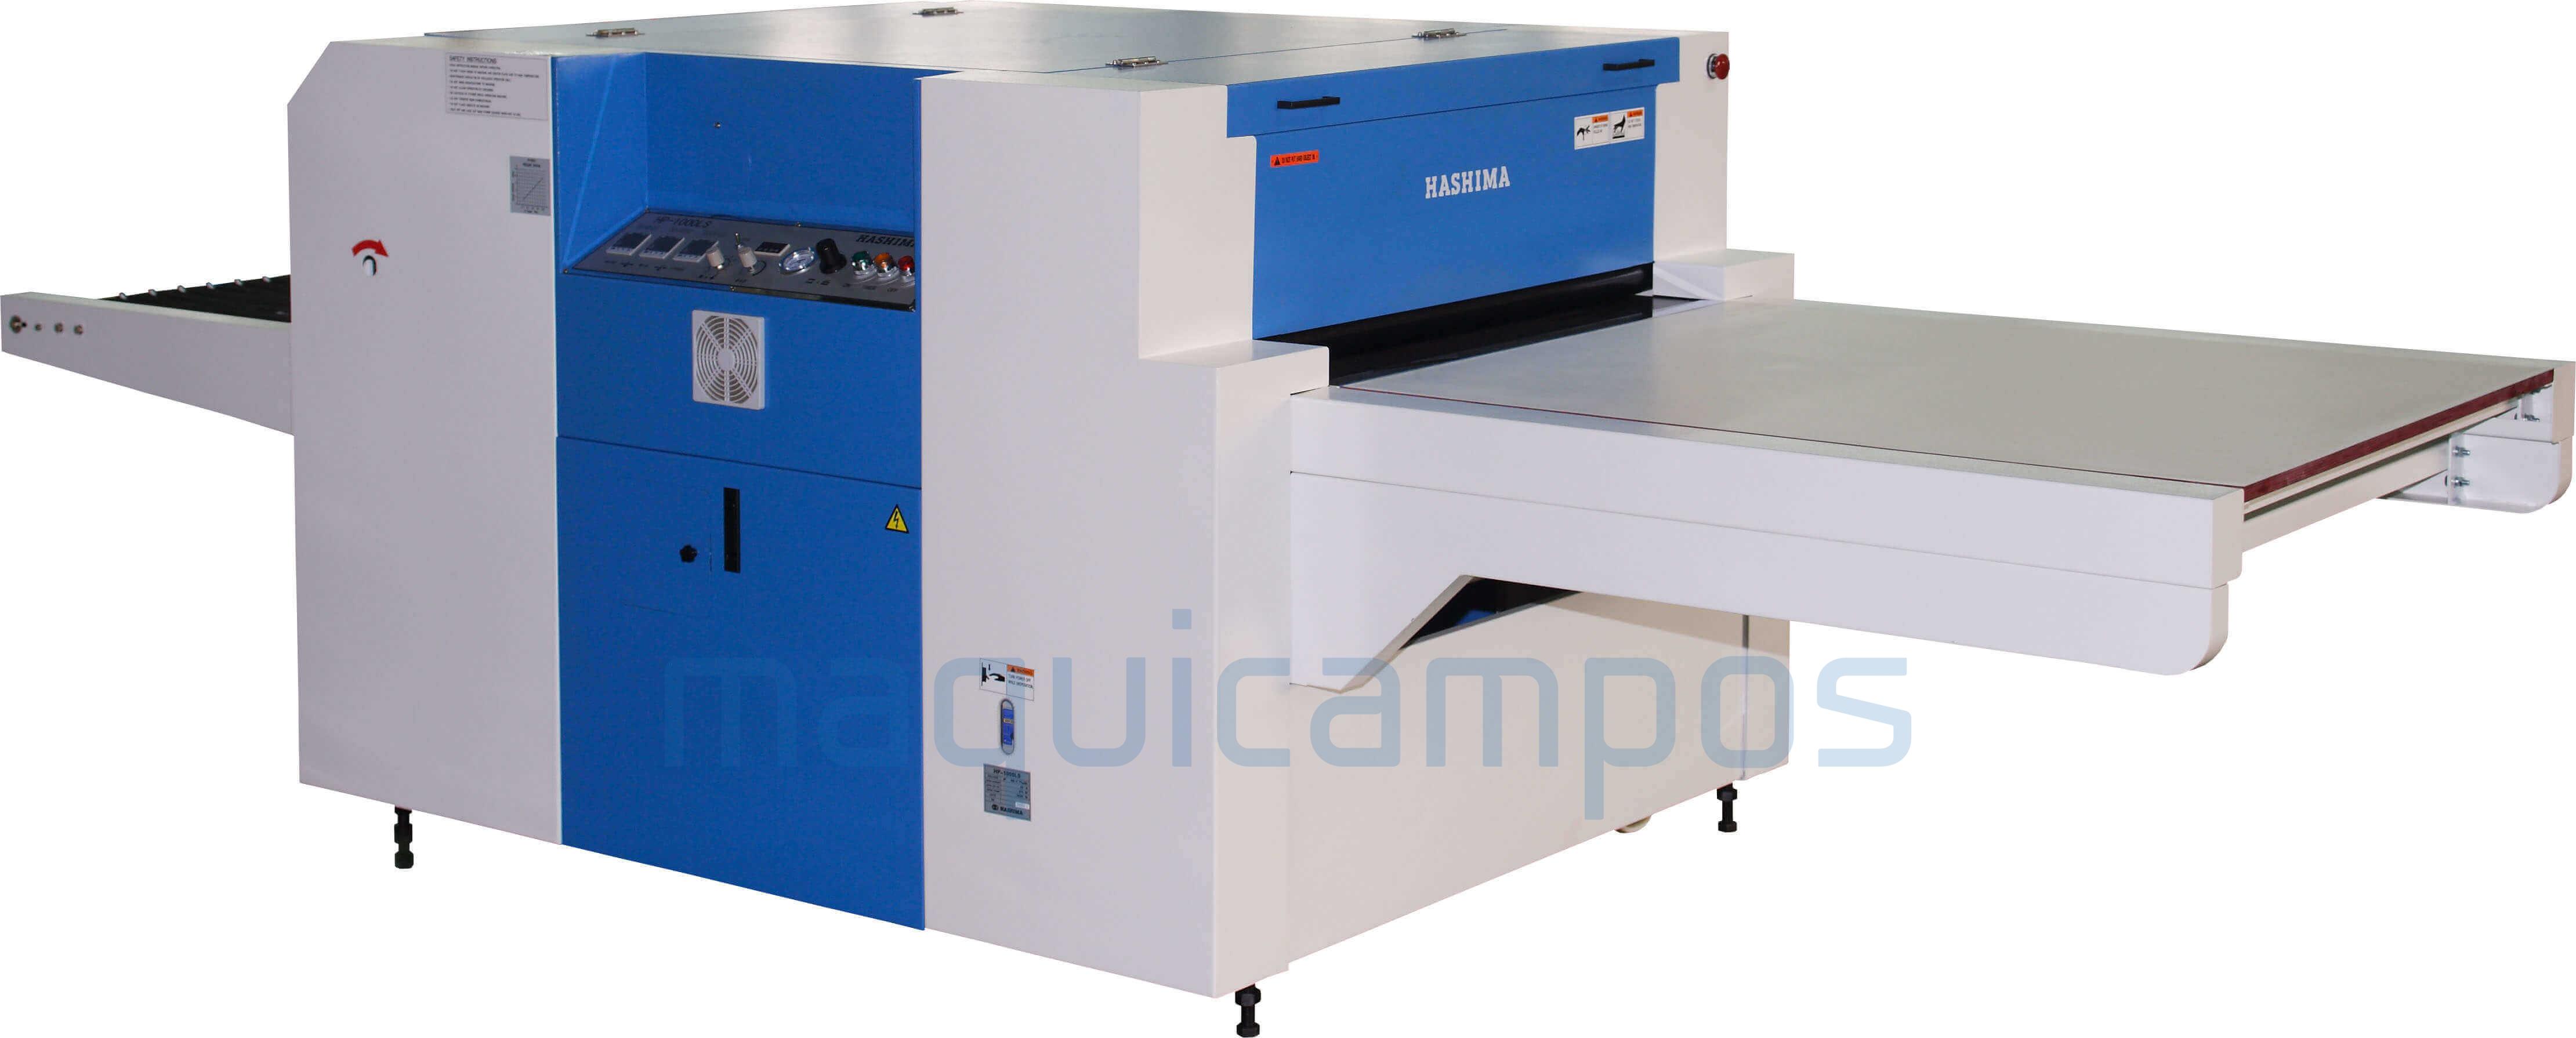 Hashima HP-1000LS Press Fusing Machine